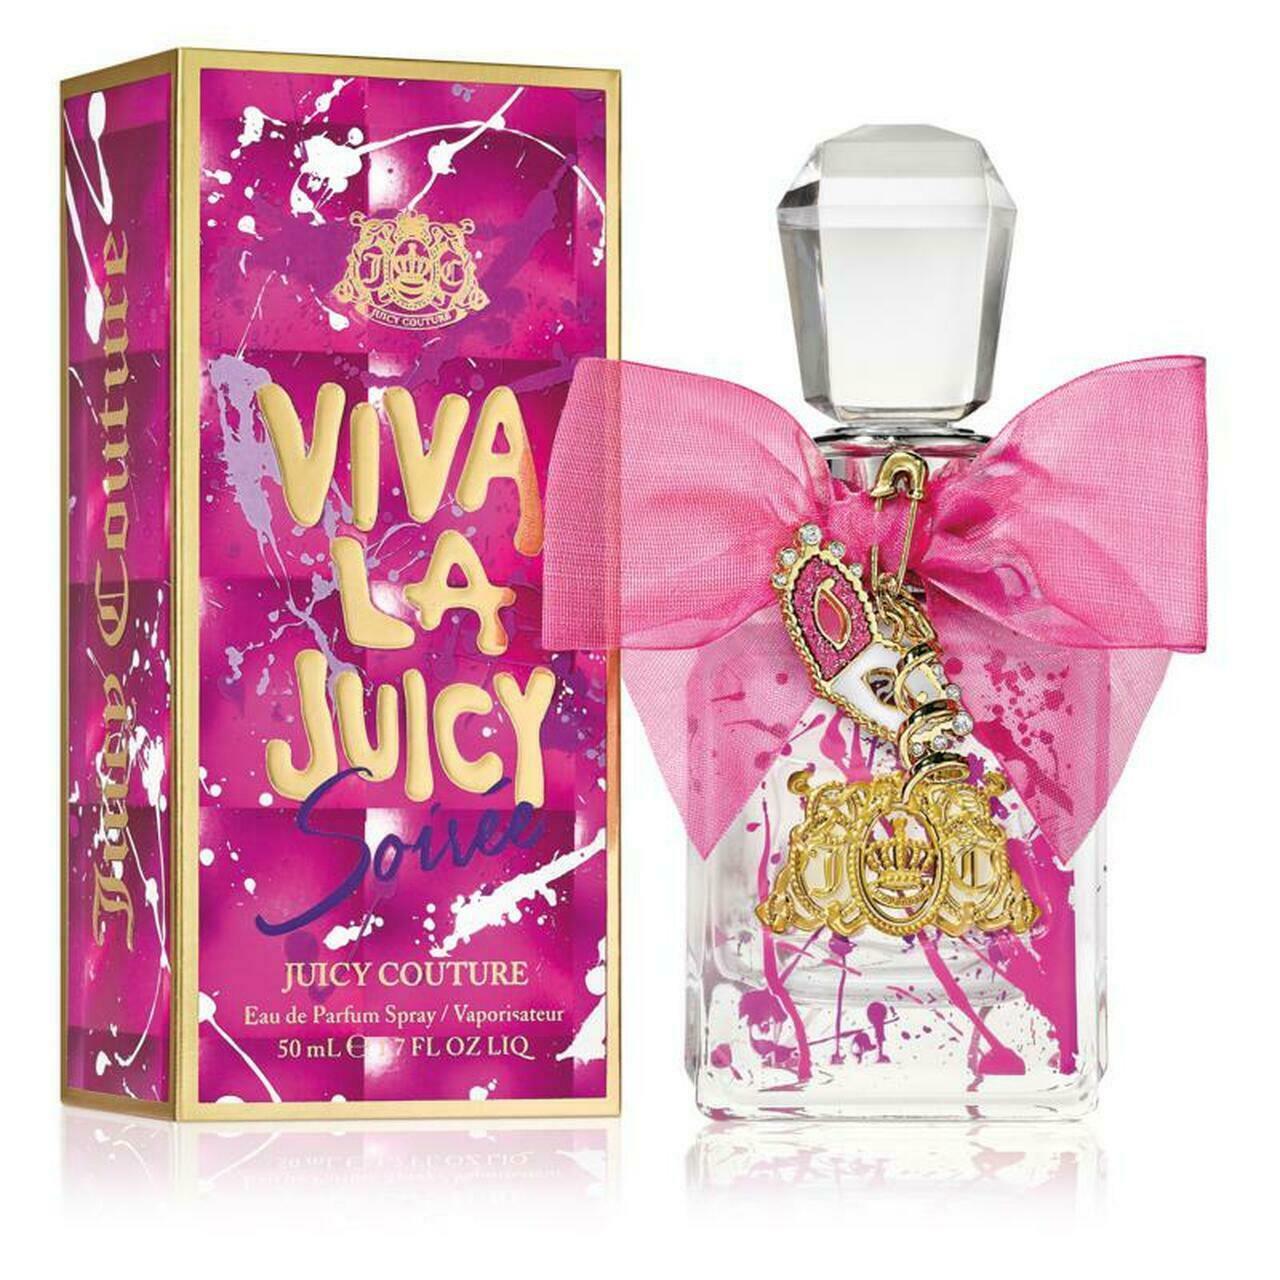 Aaaaaaaaaajuicy couture viva la juicy soiree 1.7 oz perfume